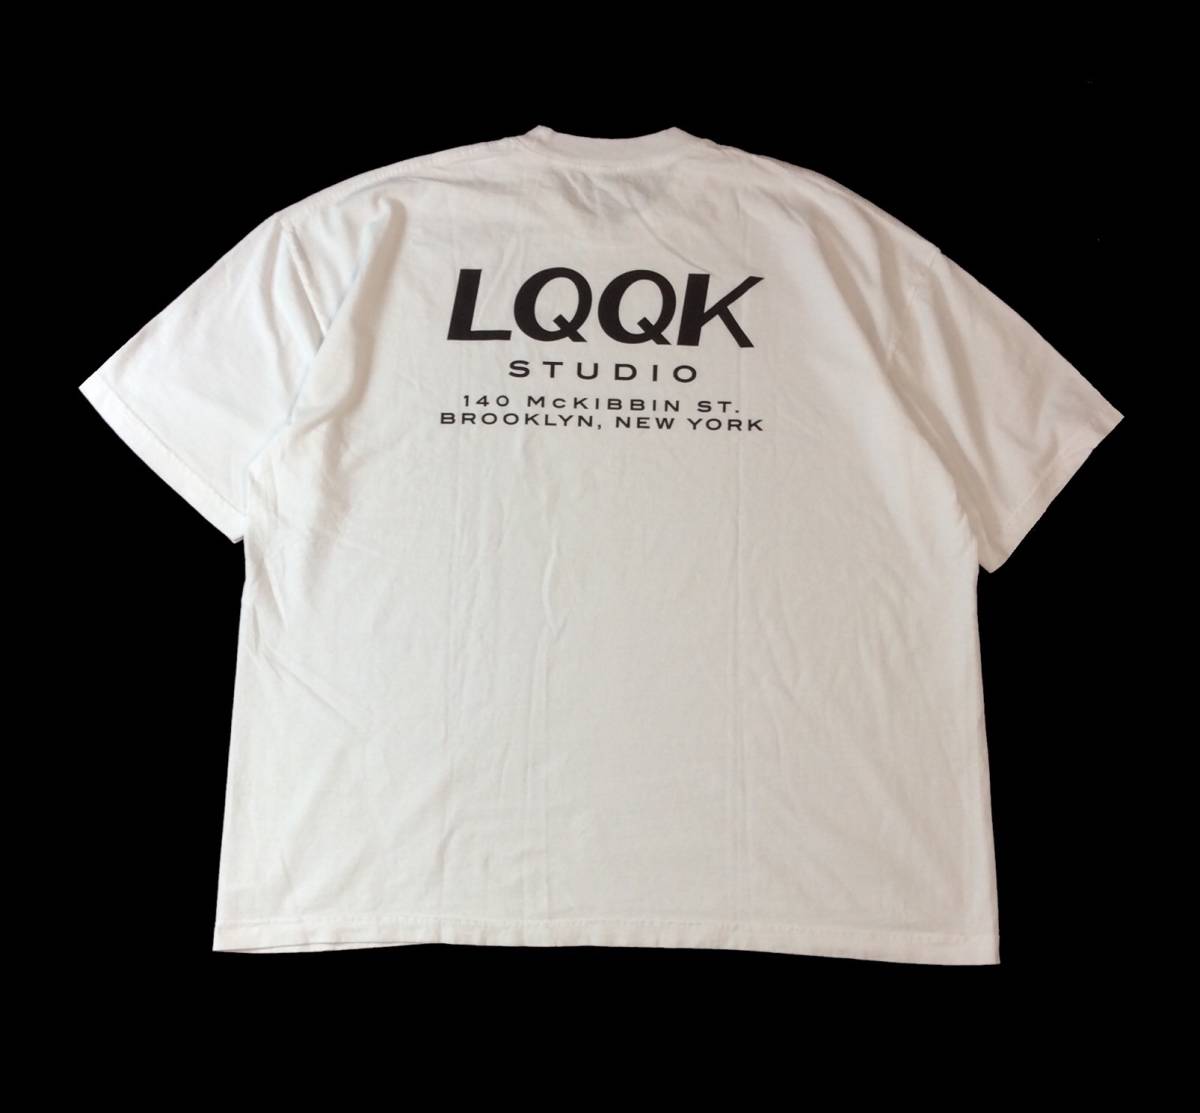 安いそれに目立つ ホワイト カットソー 半袖Tシャツ ルックスタジオ STUDIO LQQK 白 XXL メンズ バックプリント 文字、ロゴ